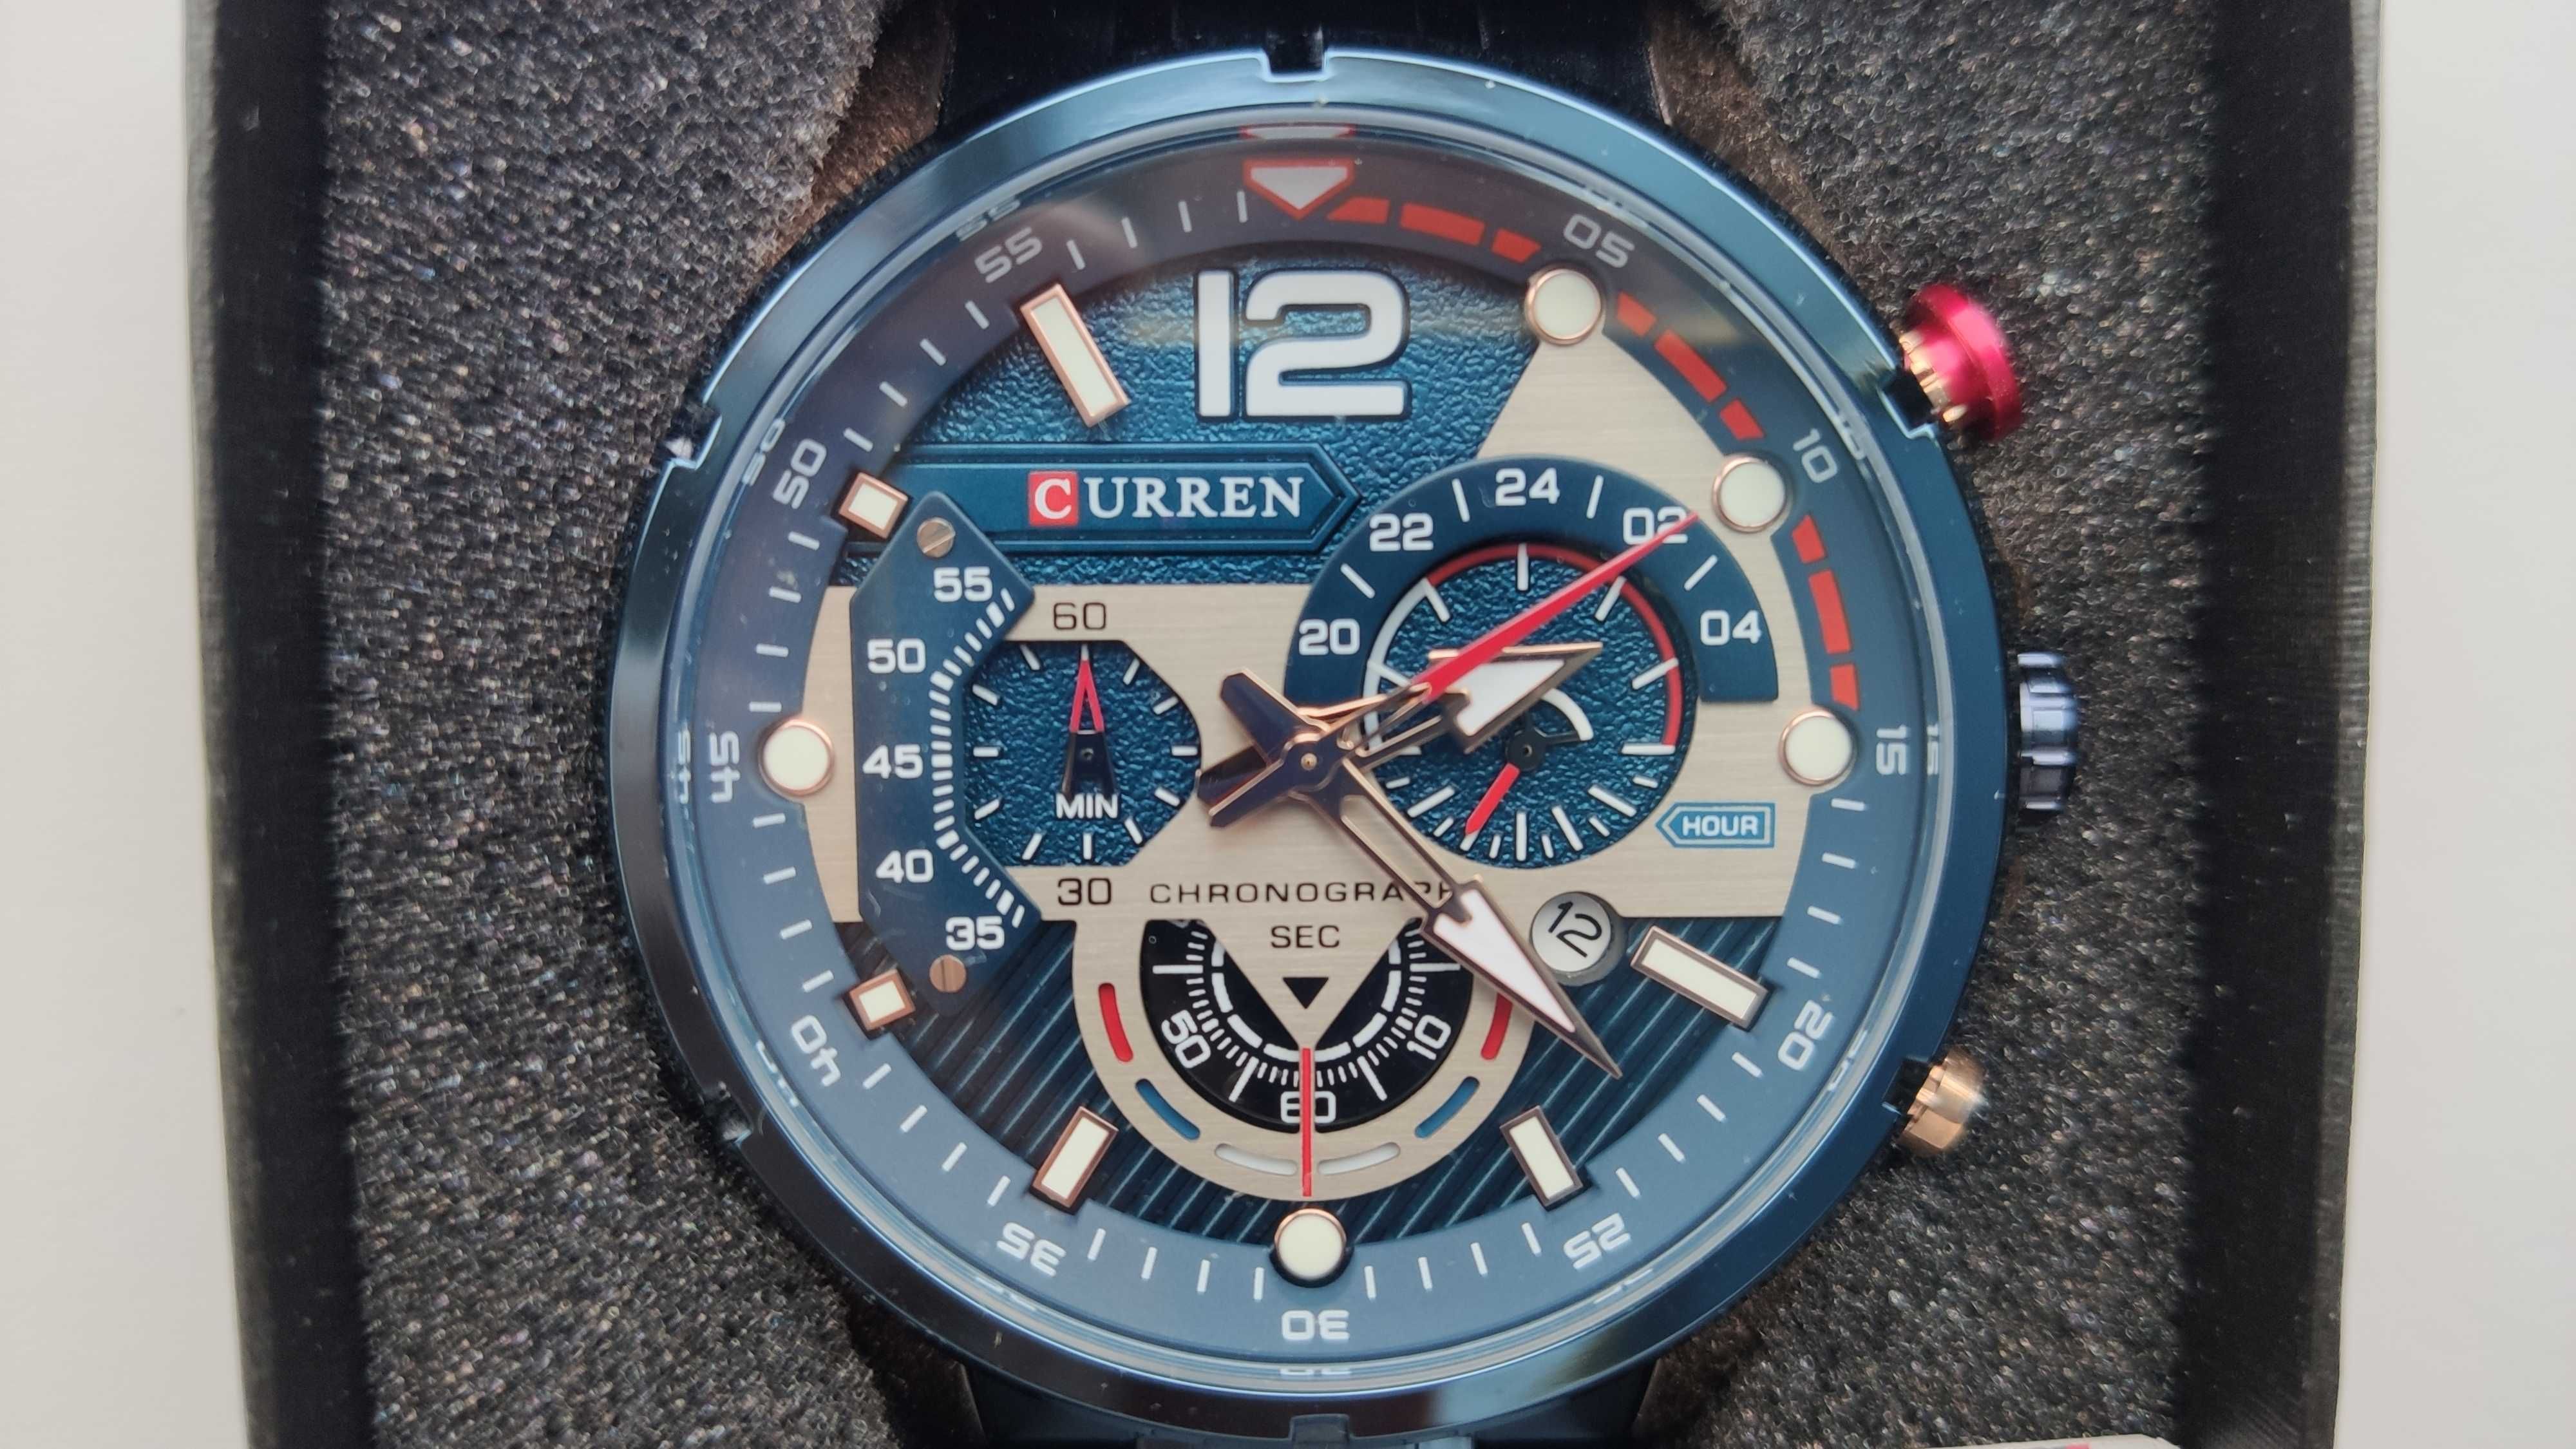 Мужские кварцевые часы CURREN модель 8395 купить недорого Киев Украина